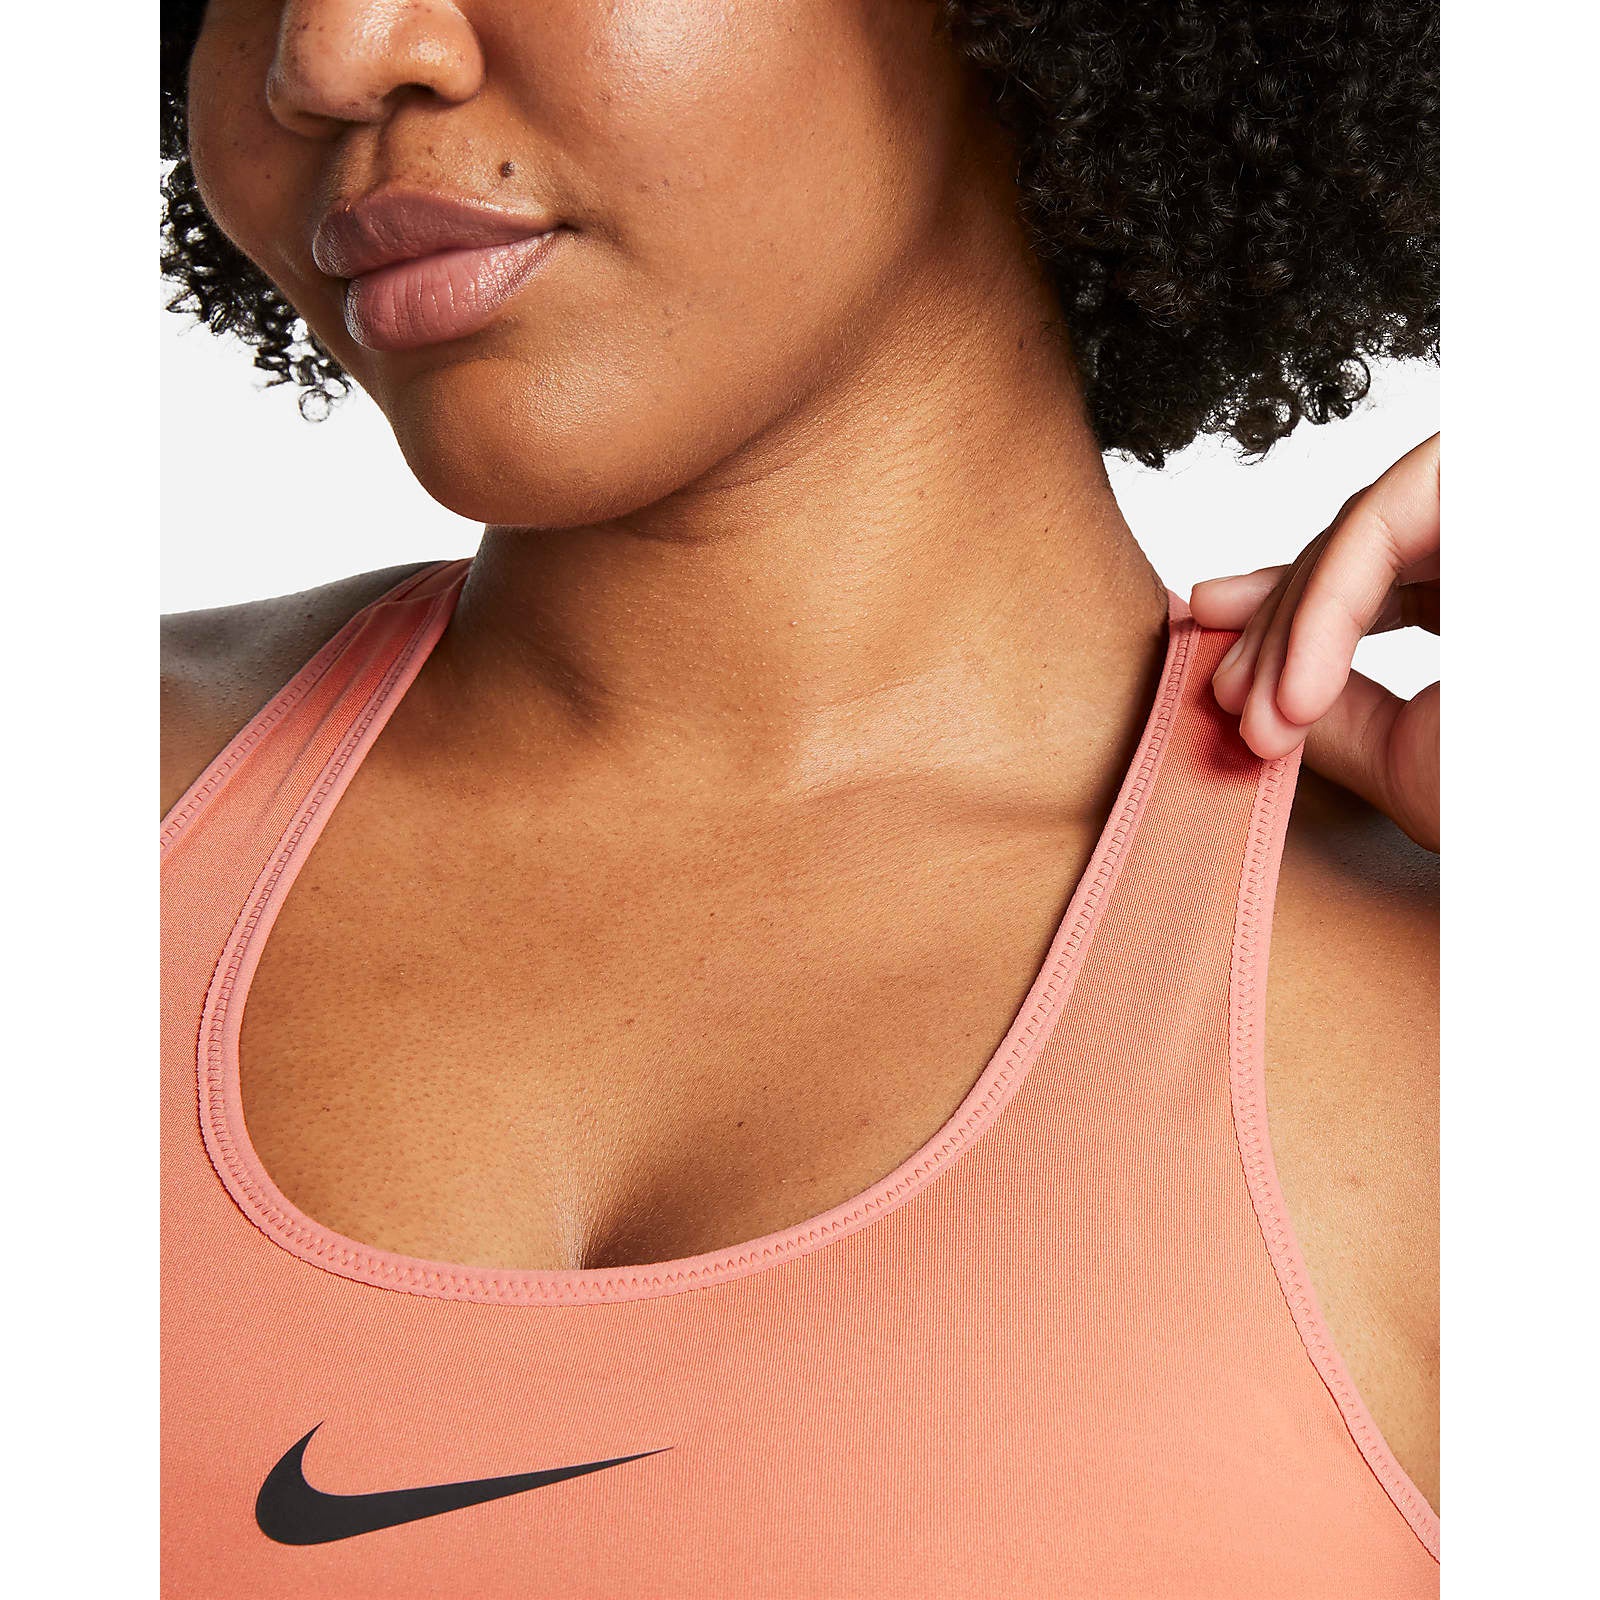 Nike Dri-FIT Swoosh High-Support Sports Bra Women